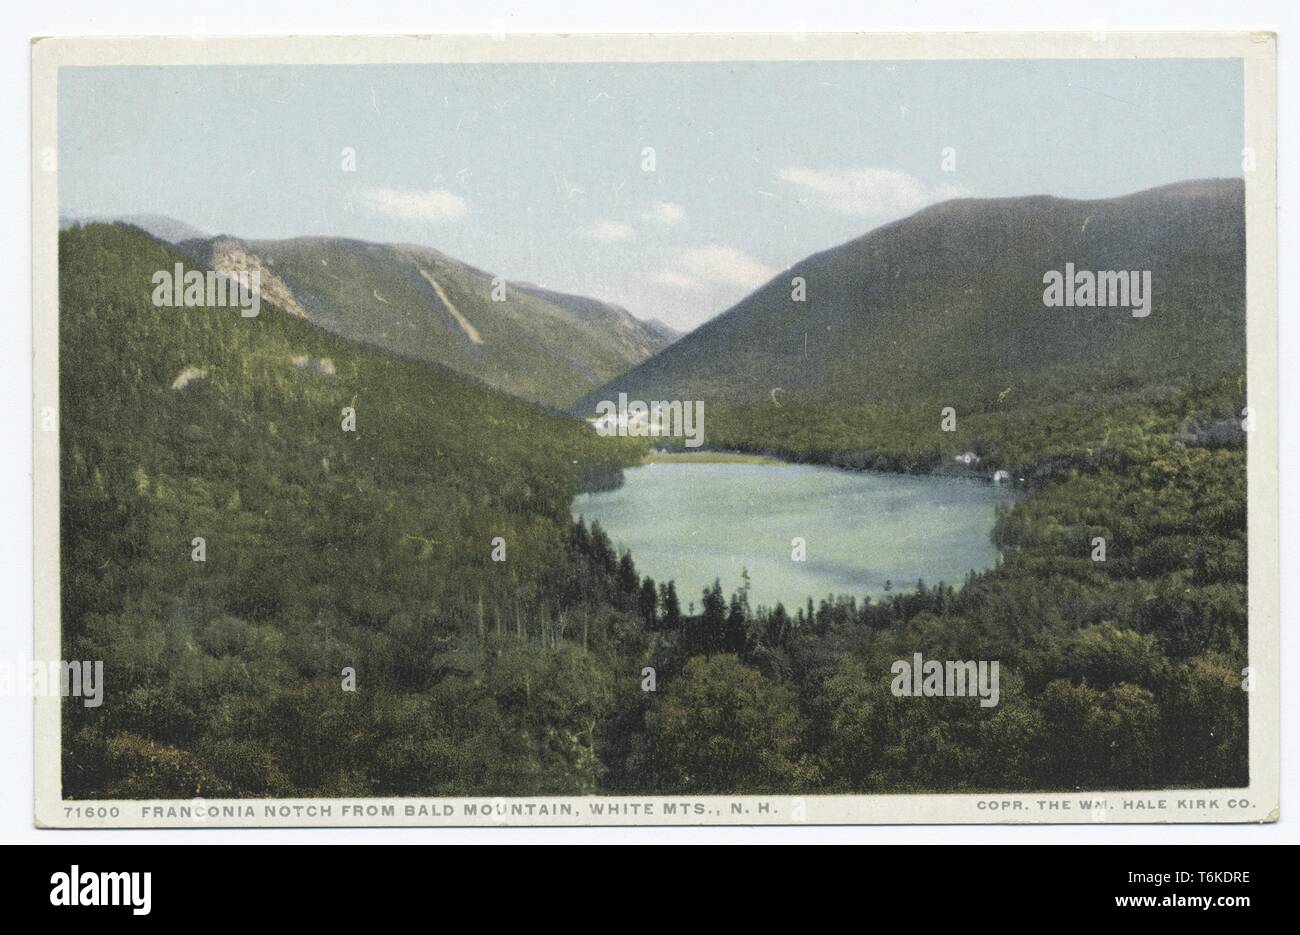 Detroit Publishing Company vintage cartolina di Franconia Notch da montagna calva, White Mountains, New Hampshire, 1914. Dalla Biblioteca Pubblica di New York. () Foto Stock